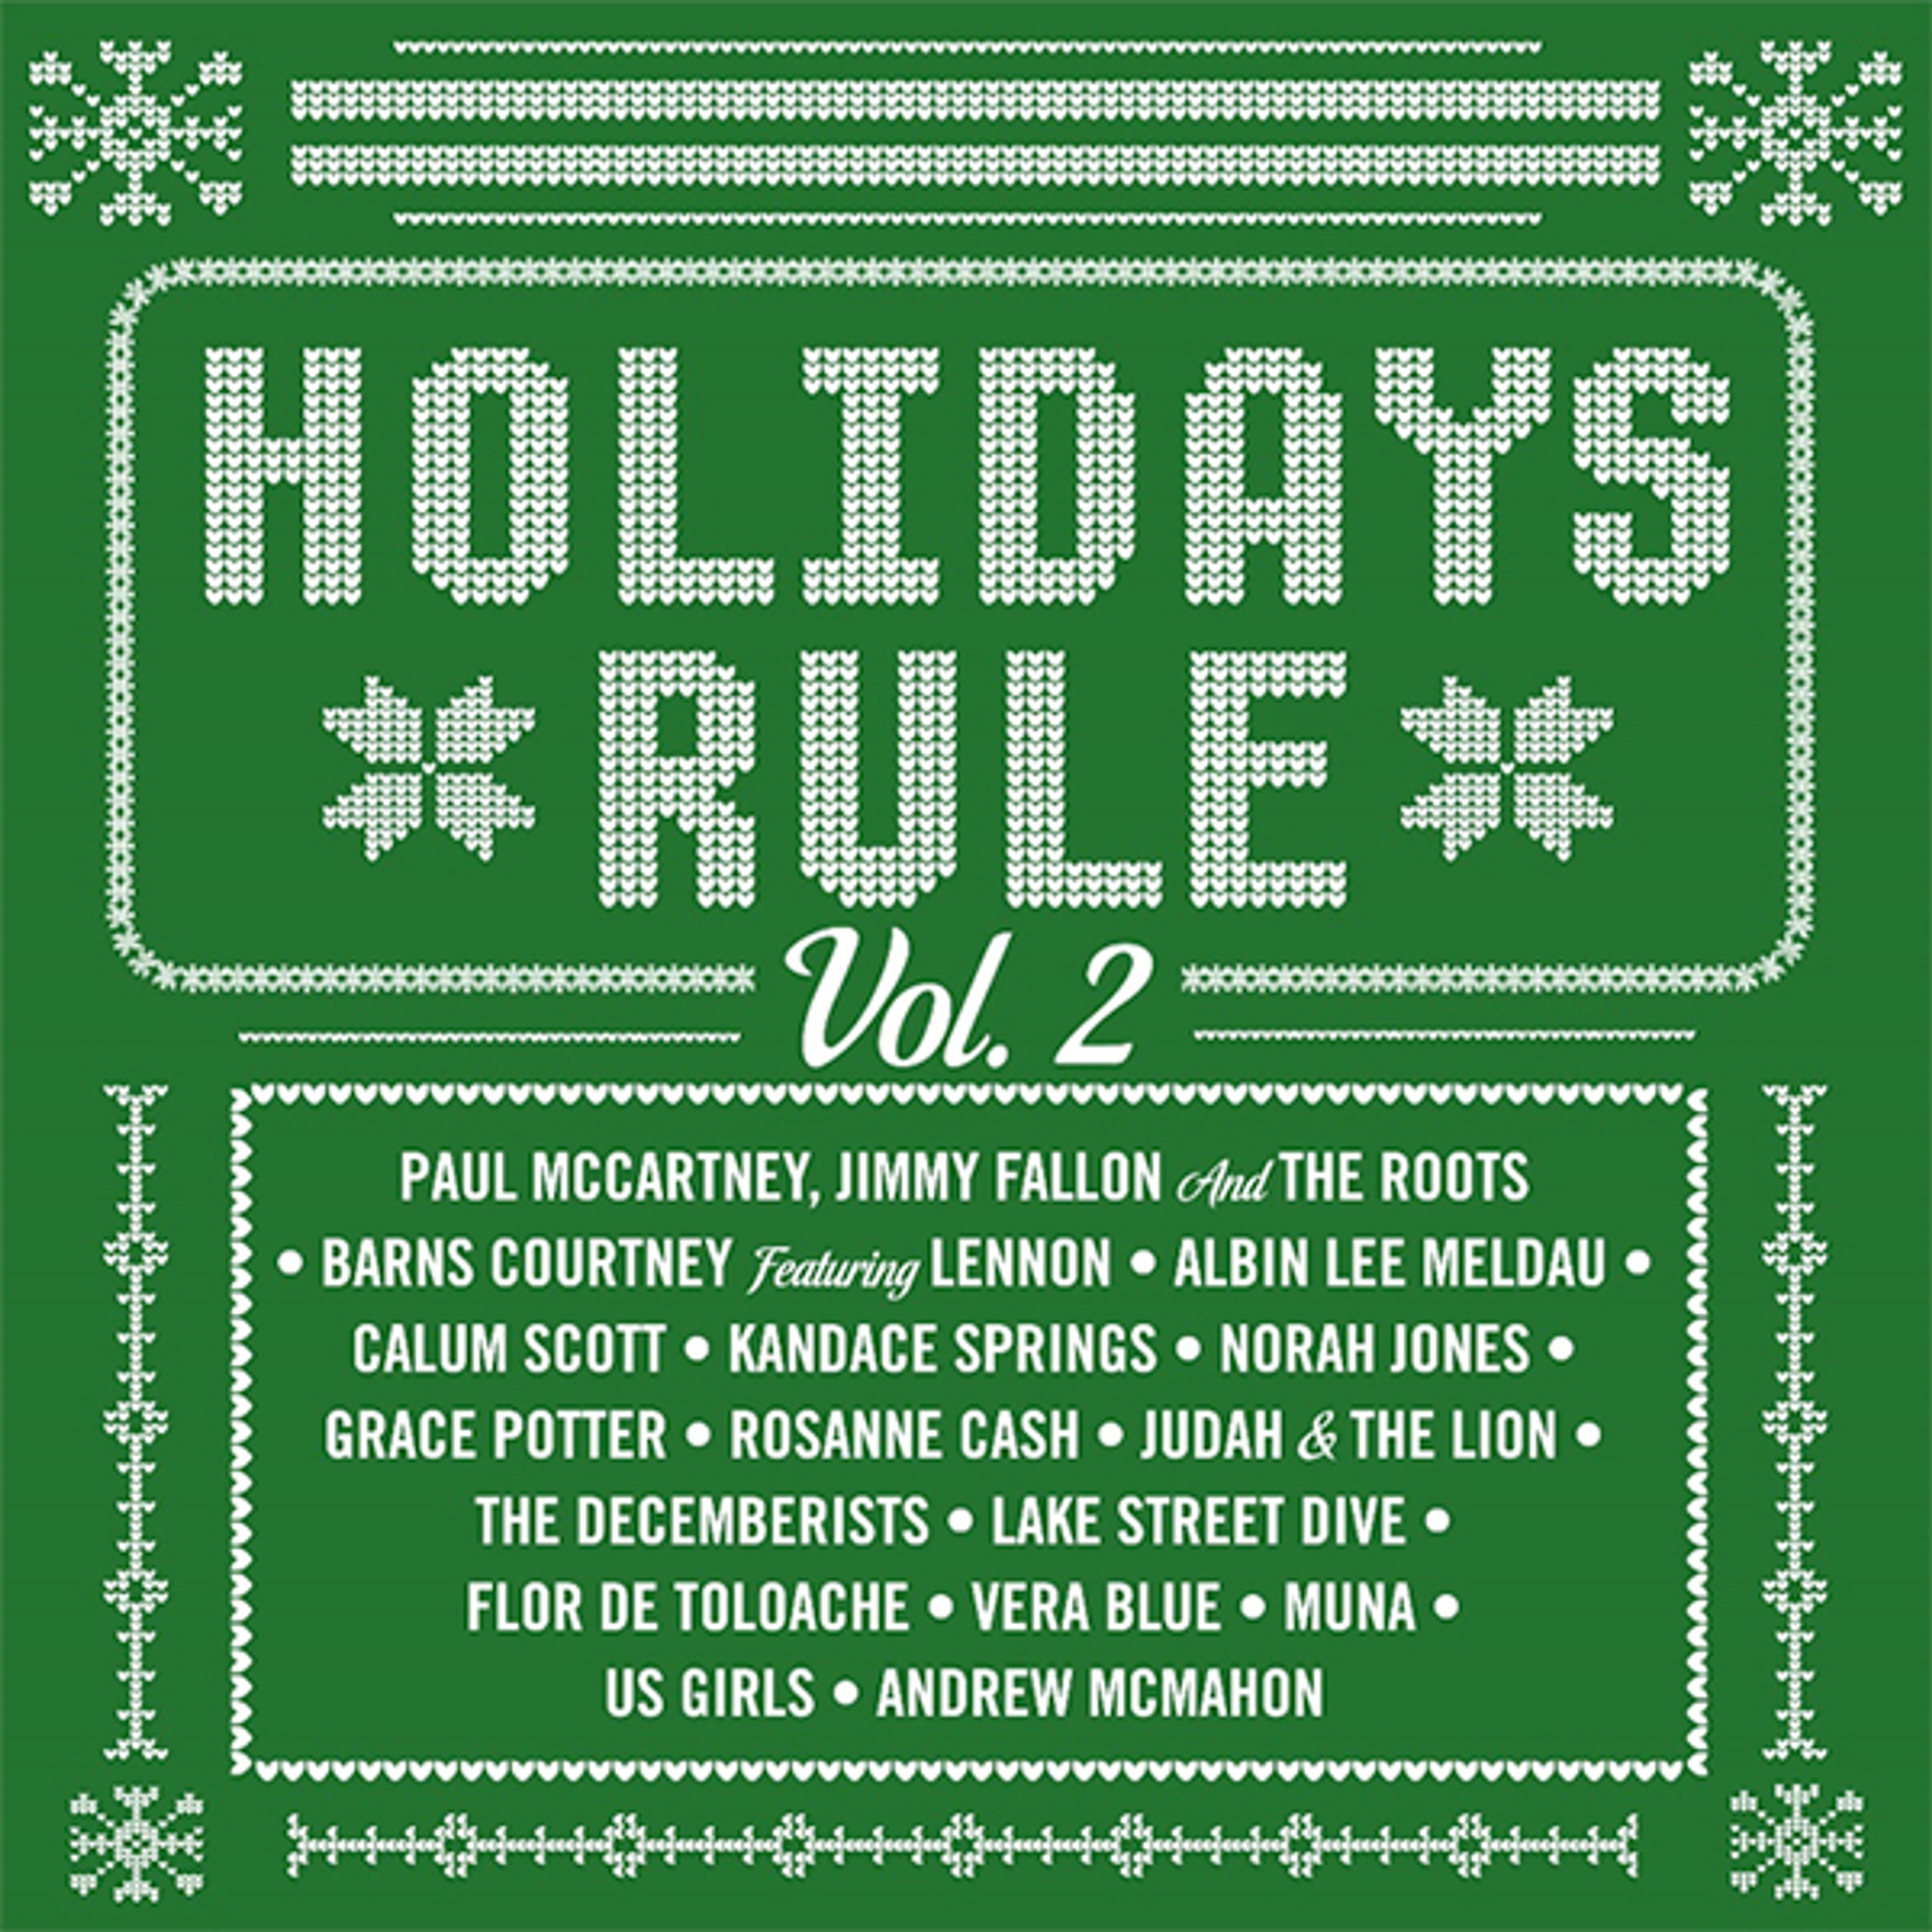  Holidays Rule Volume 2 